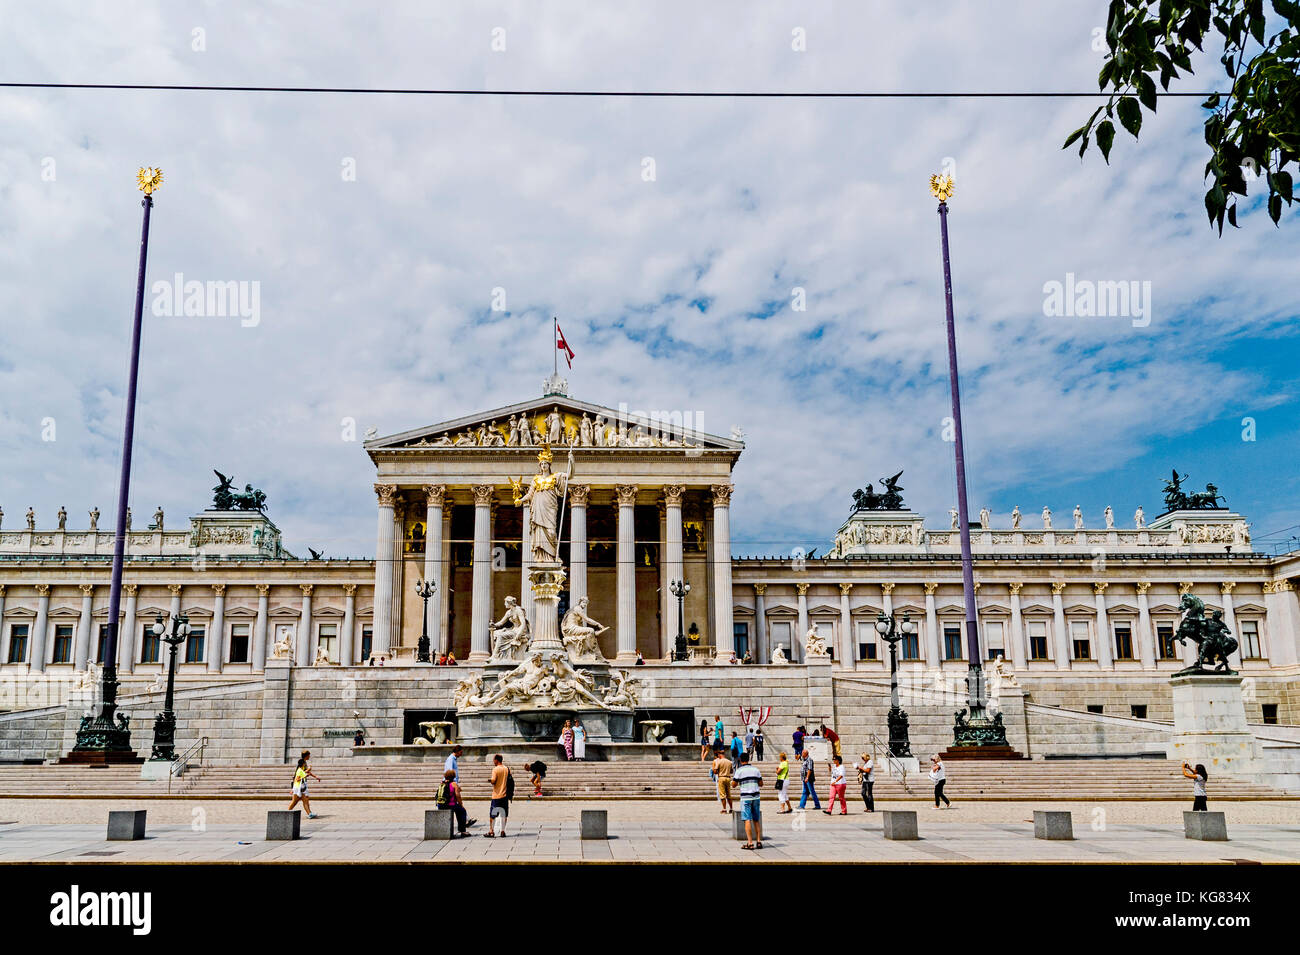 Viena (Austria) El Parlamento; Wien, Parlamentsgebäude Foto de stock